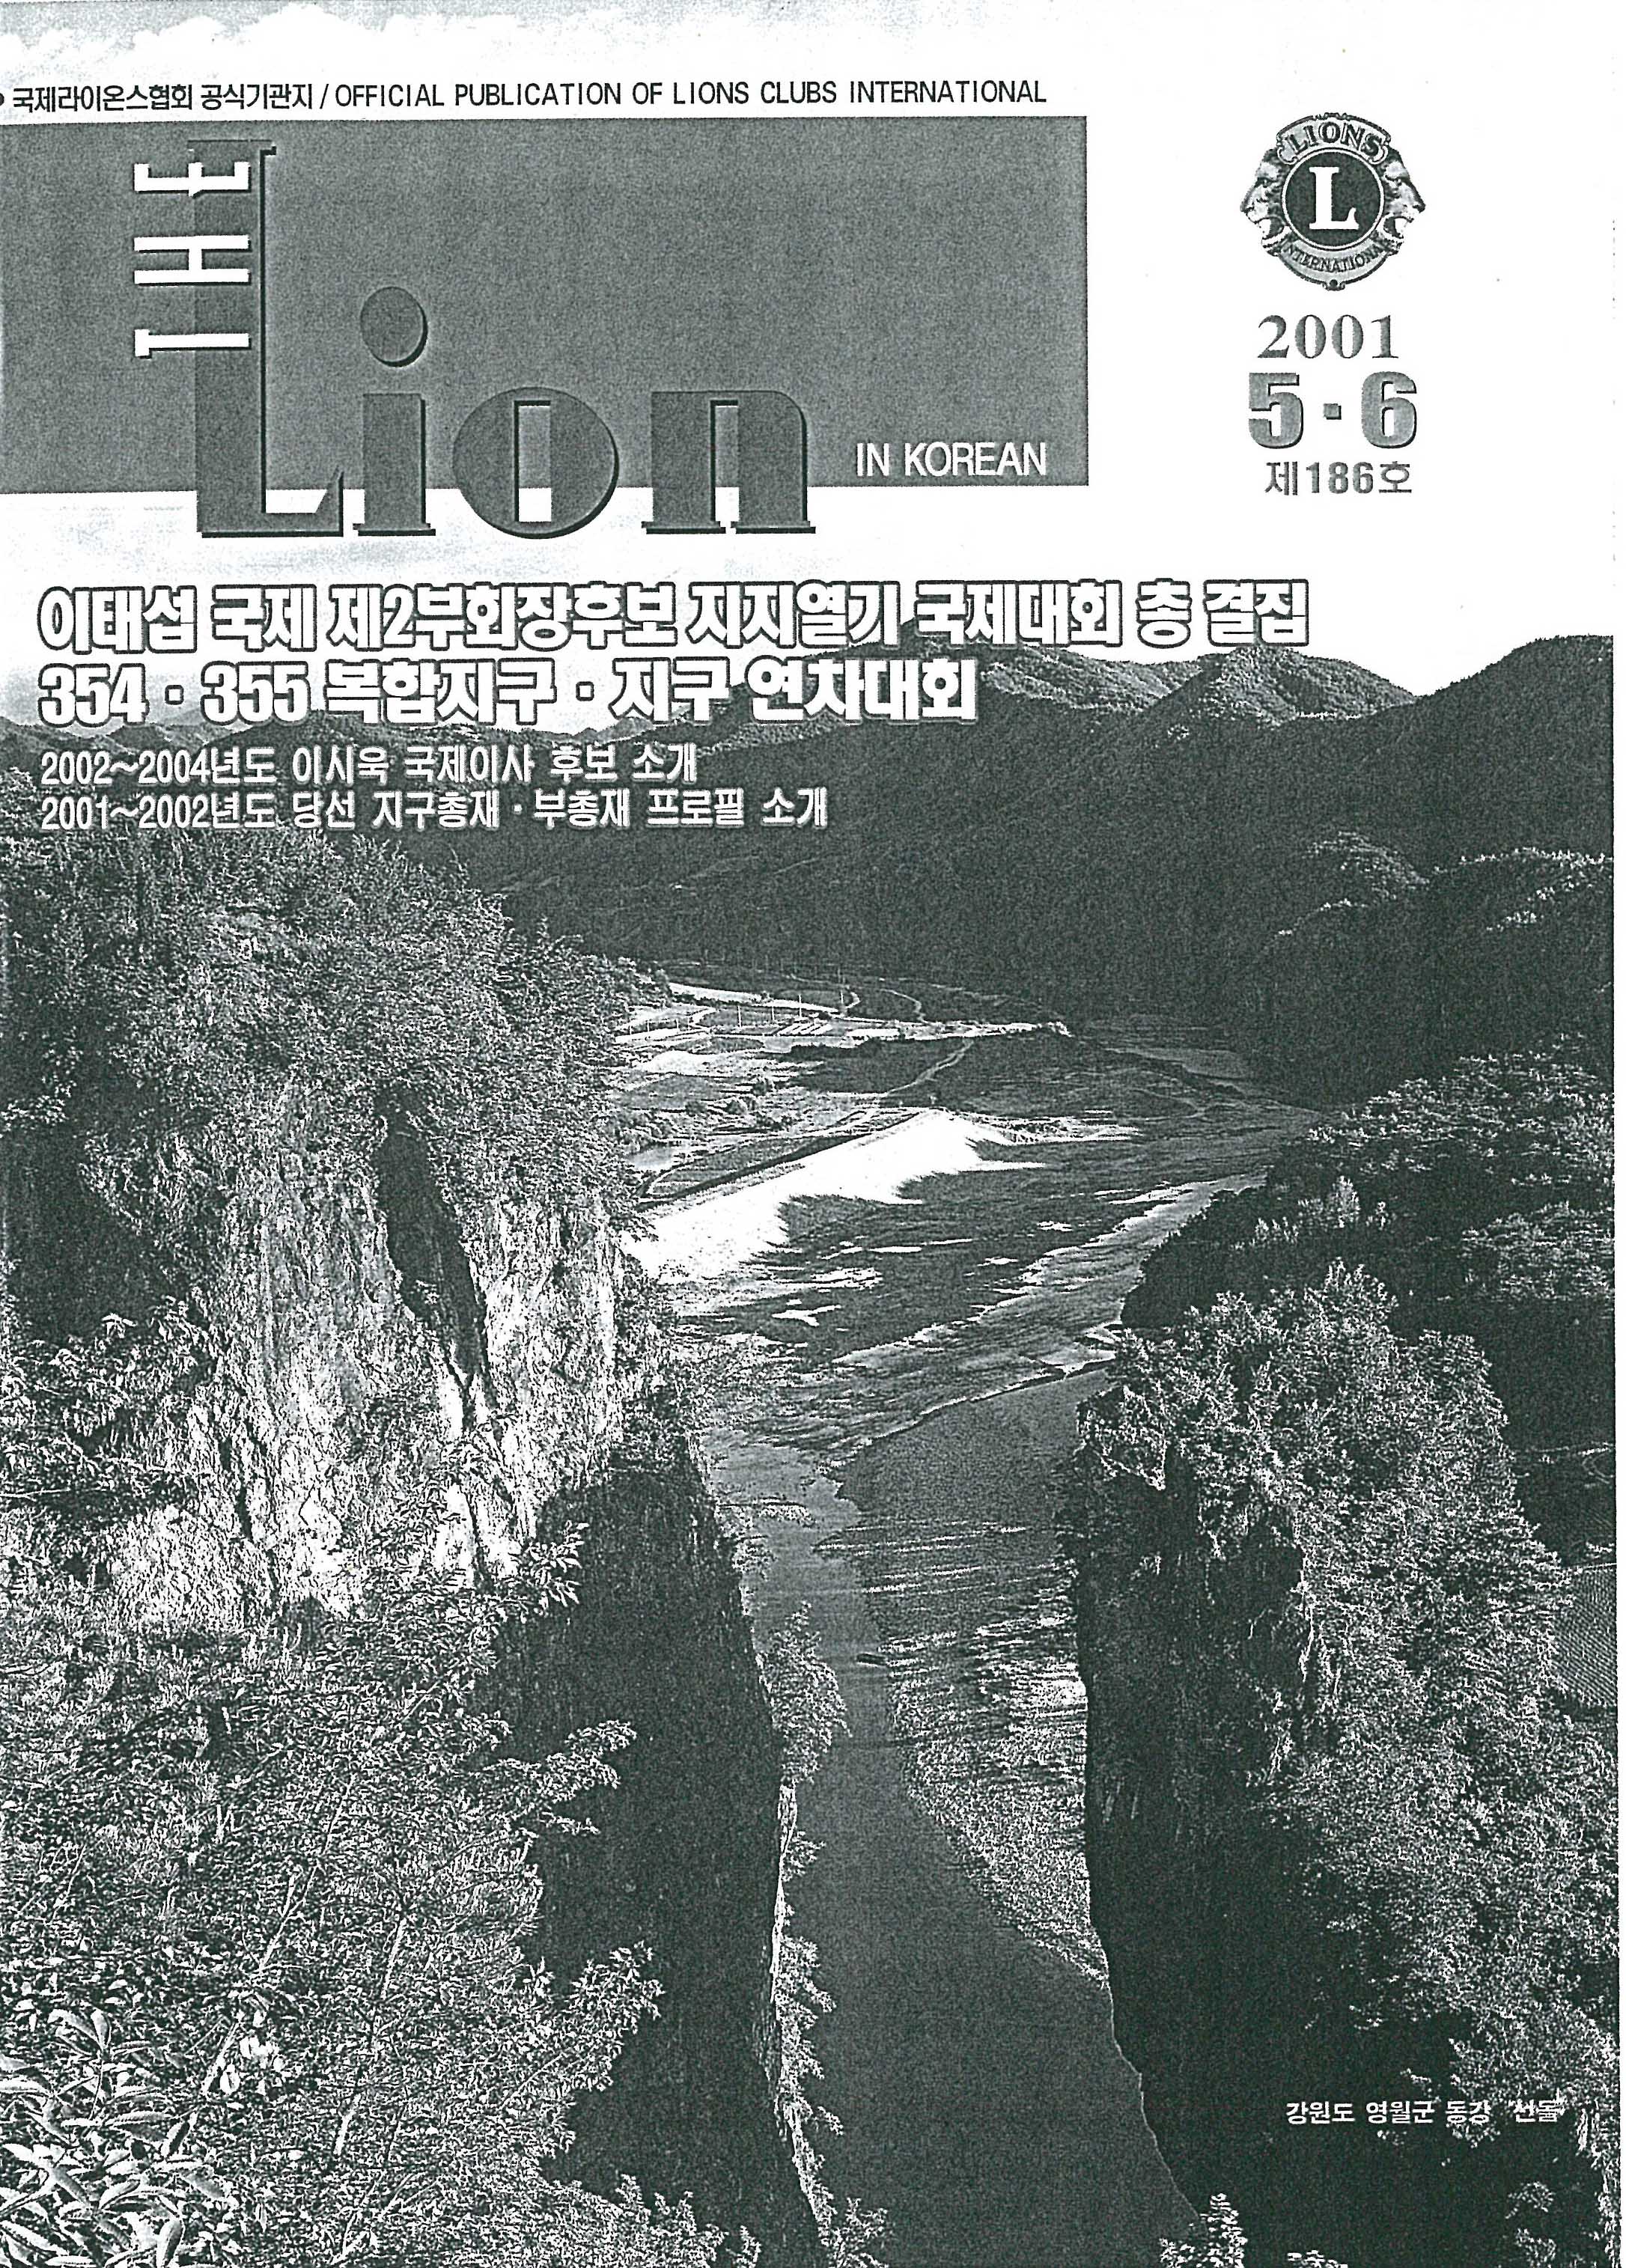  「60년대 이응노 꼴라주전」, 『THE LION IN KOREA』 